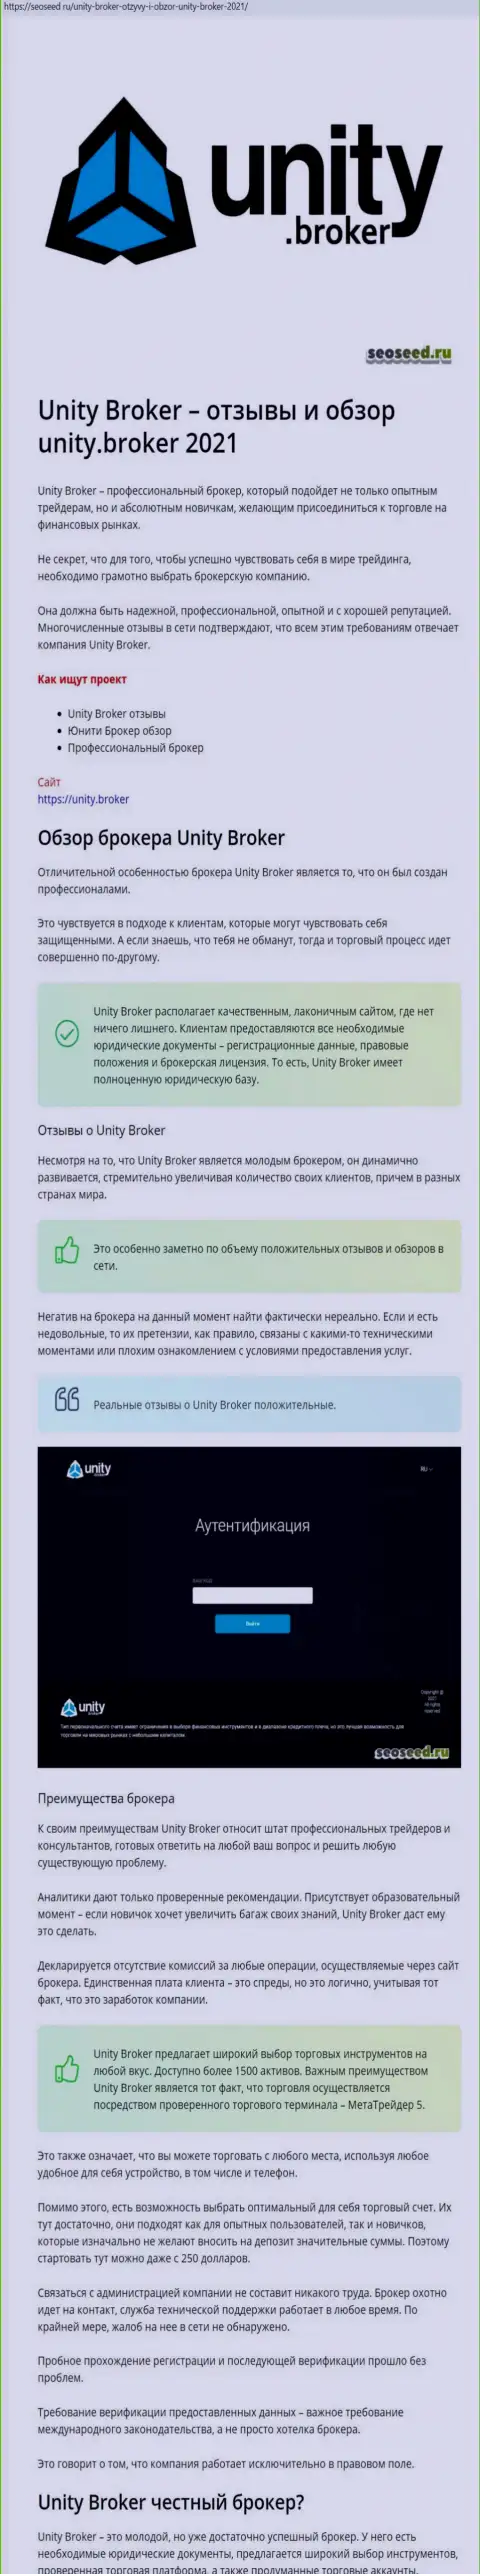 Информация о Форекс брокере Unity Broker на сайте seoseed ru